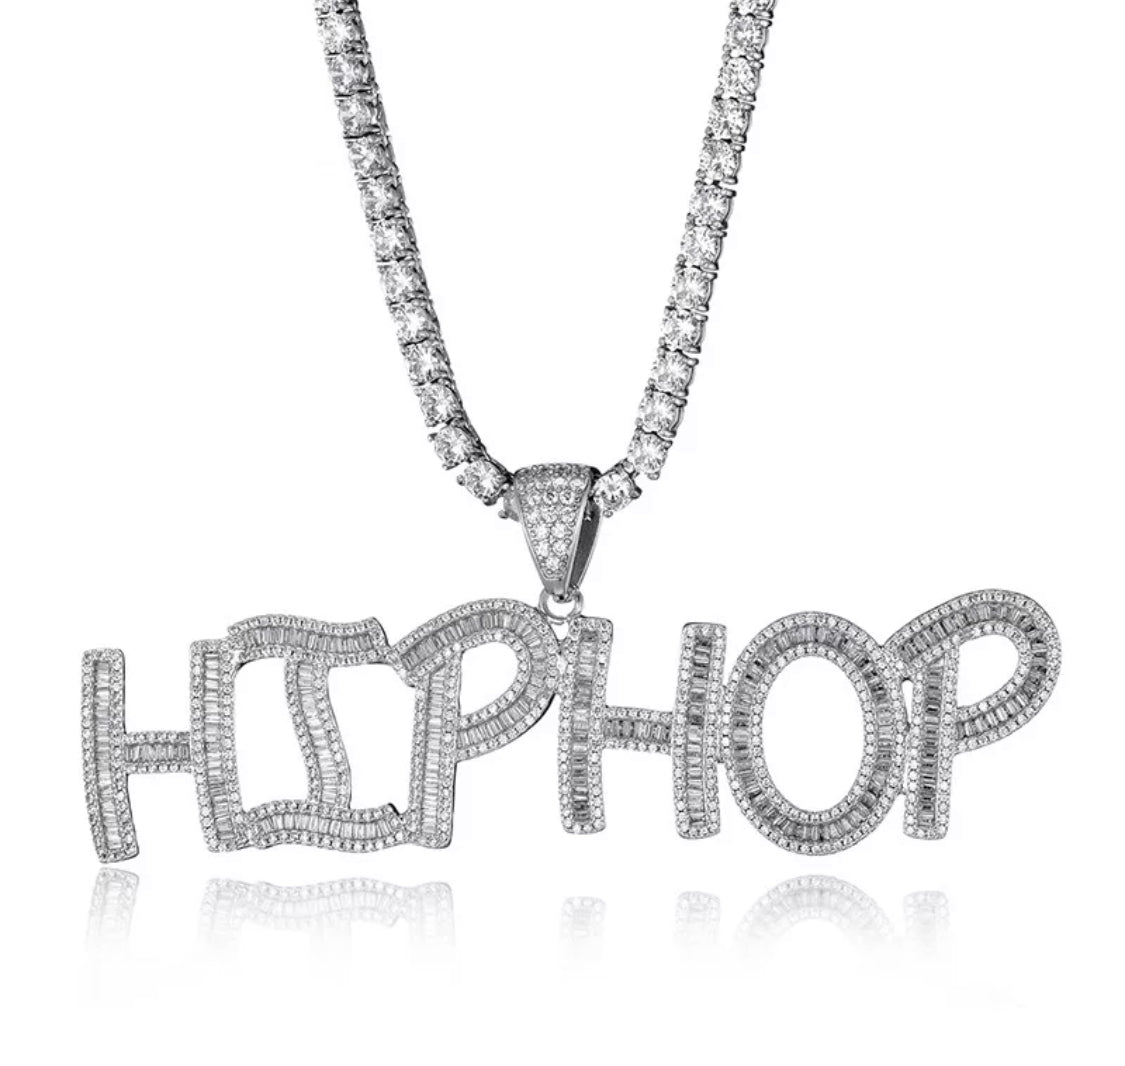 The Hip Hop Necklace